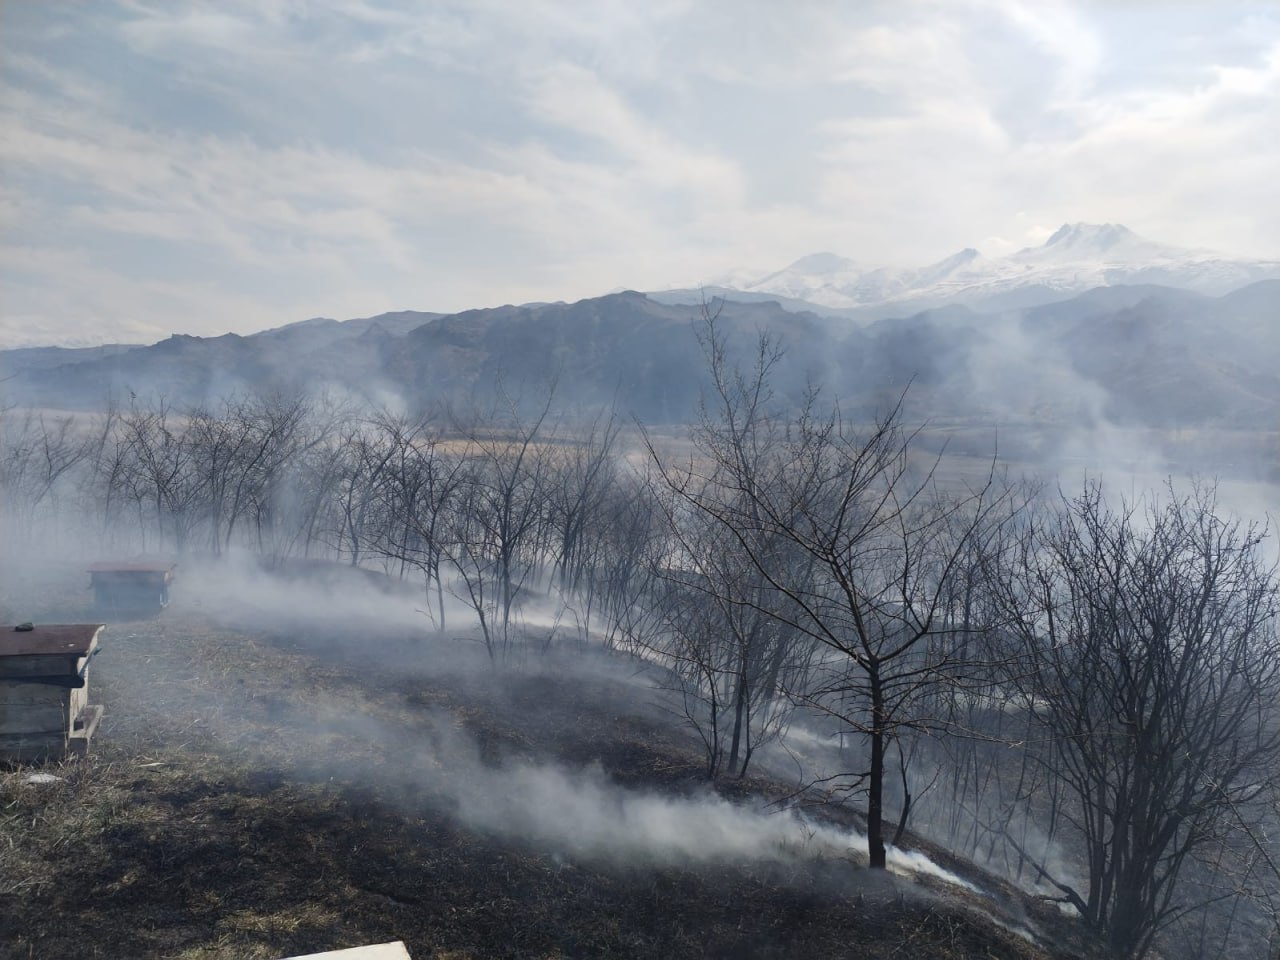 Մալիշկա գյուղում այրվել է մոտ 8000 քմ խոտածածկույթ և 2 մեղվի փեթակ՝ մասամբ